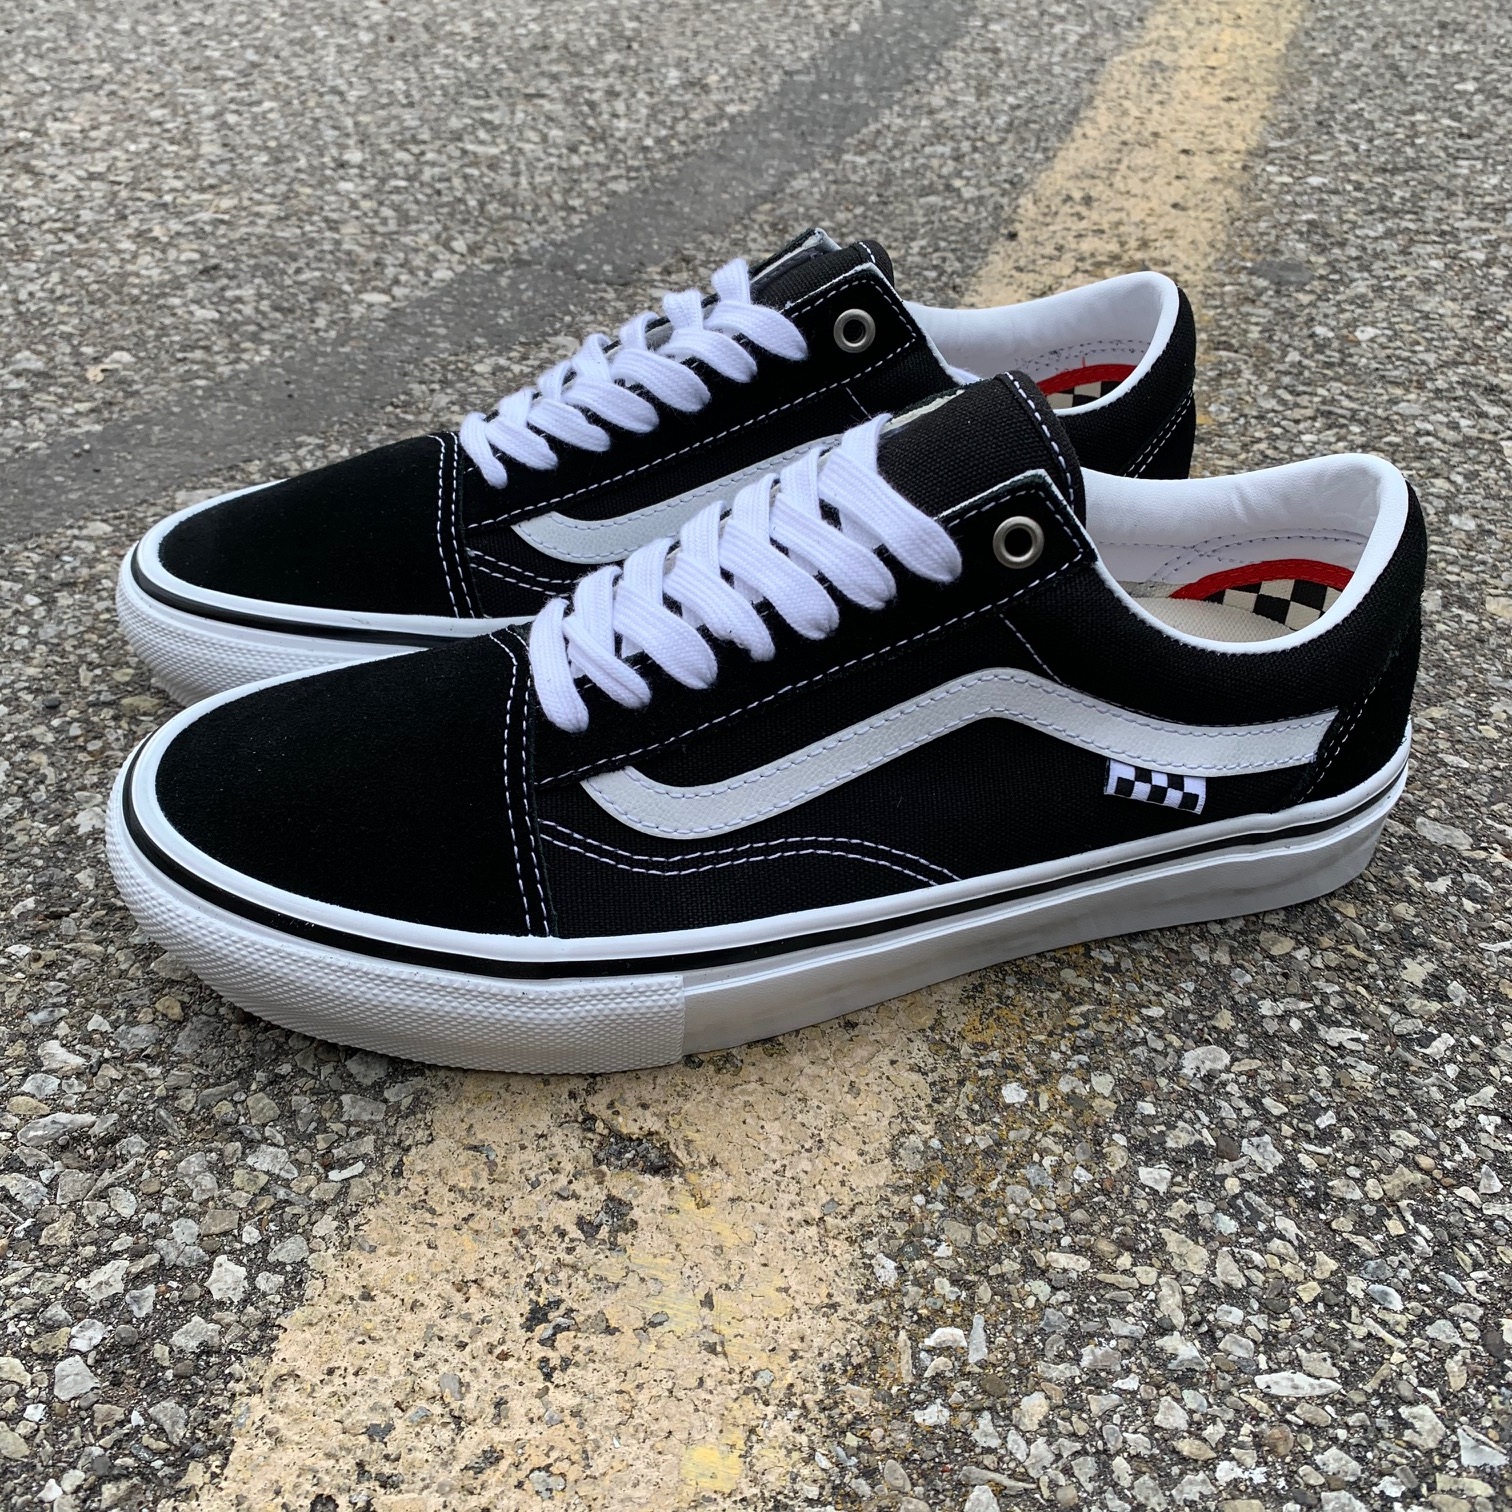 Vans Skate Old Skool Black/White | Minus Skate Shop Indianapolis, IN